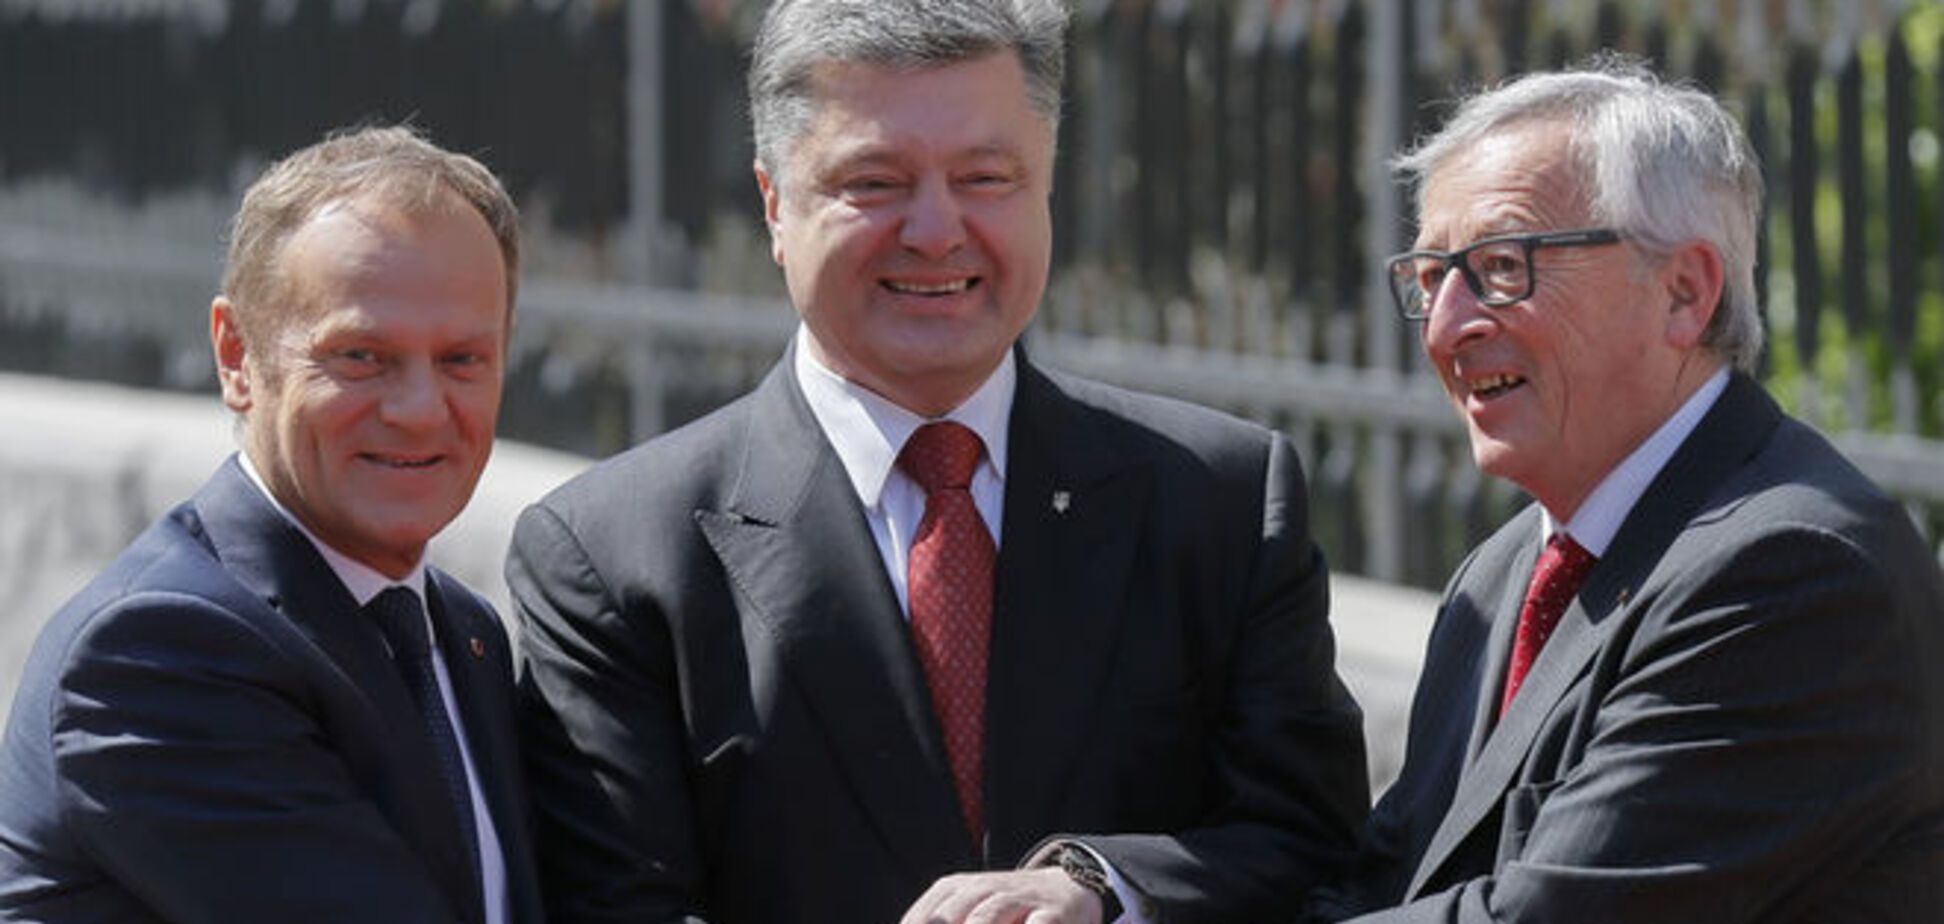 Через 5 лет Украина должна быть готова к членству в ЕС - Порошенко